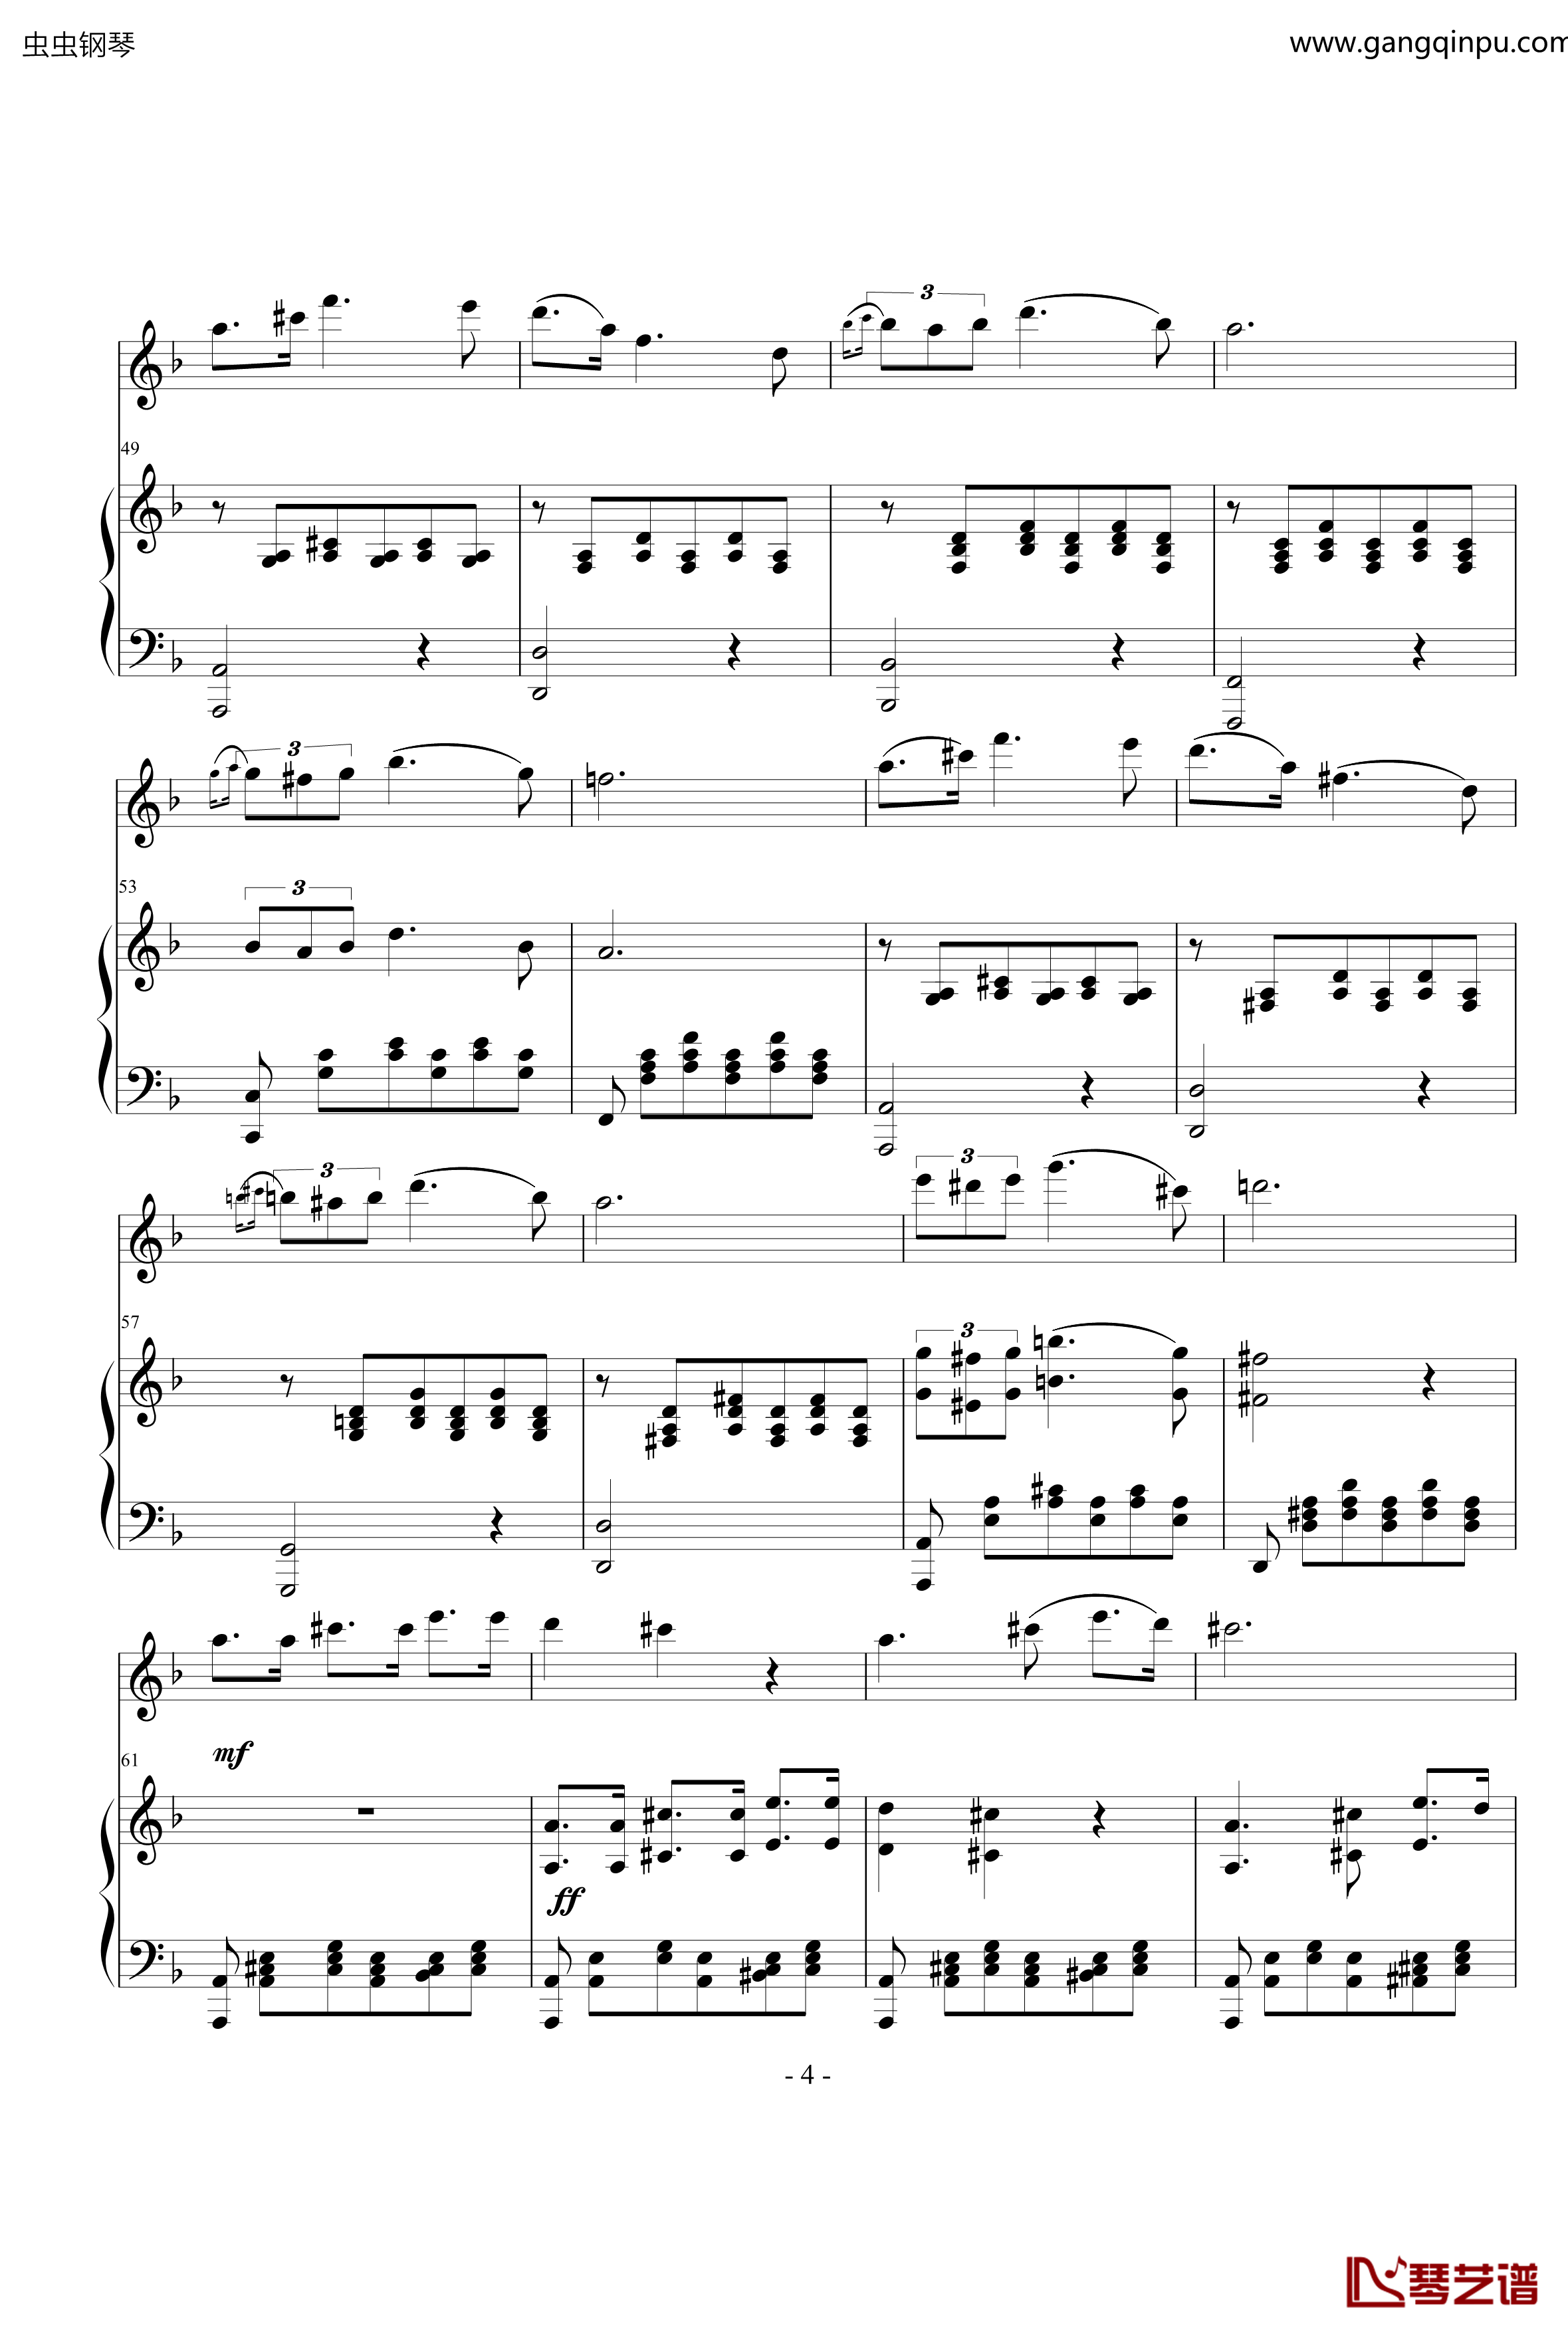 小夜曲钢琴谱-ove 格式长笛笛钢琴伴奏-舒伯特4